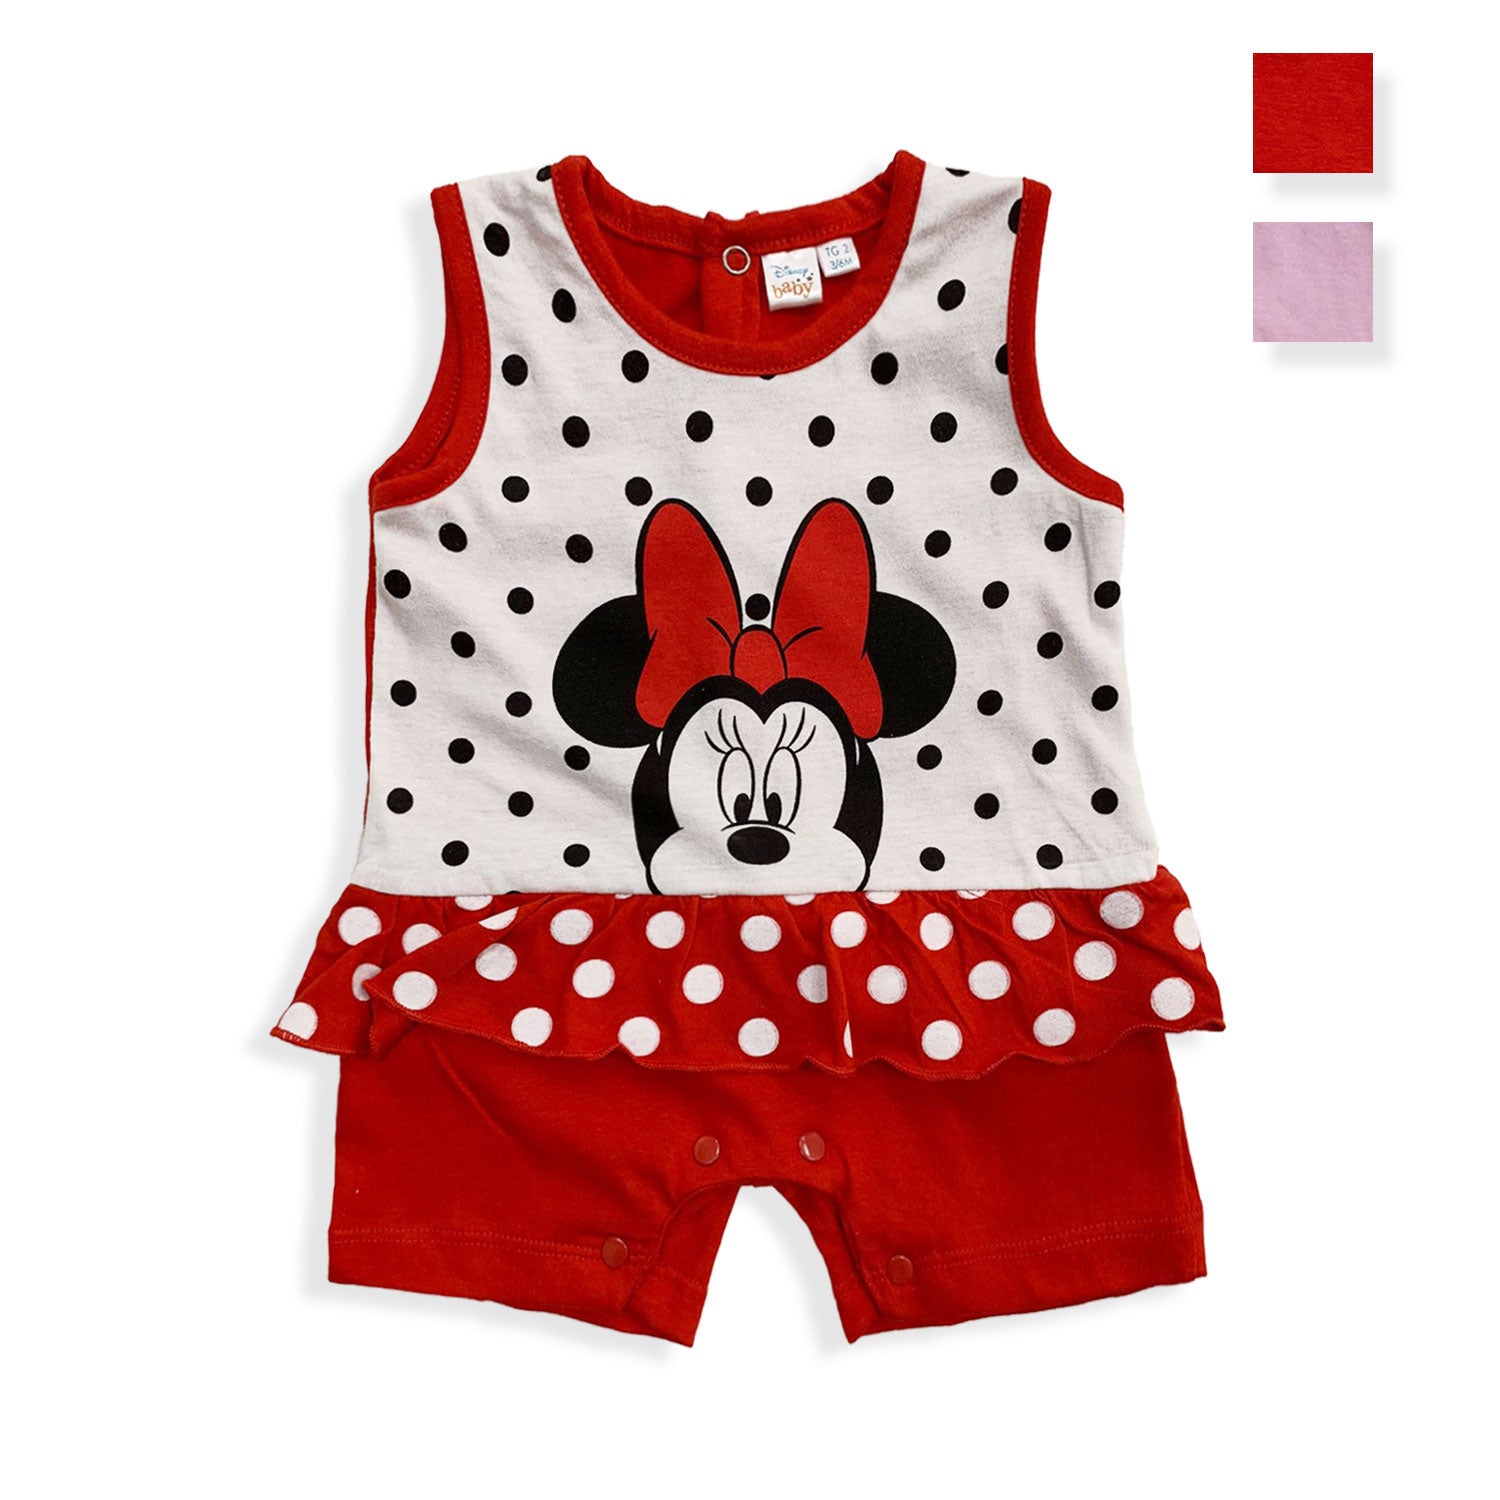 Tutina Disney Pagliaccetto neonato Minnie Mouse estiva in cotone bimba 5498